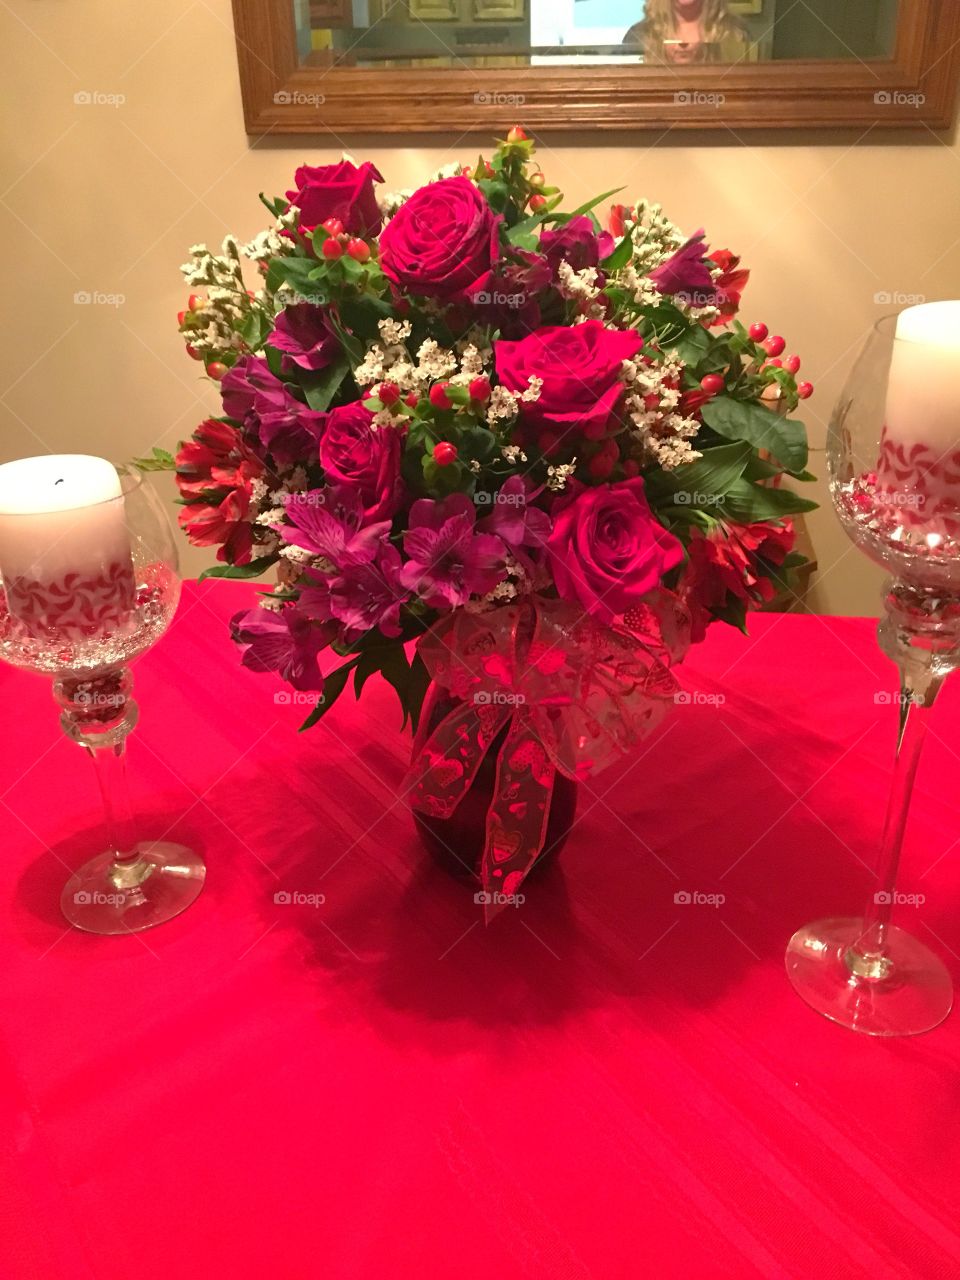 Homemade Rose and Alstroemerias bouquet 